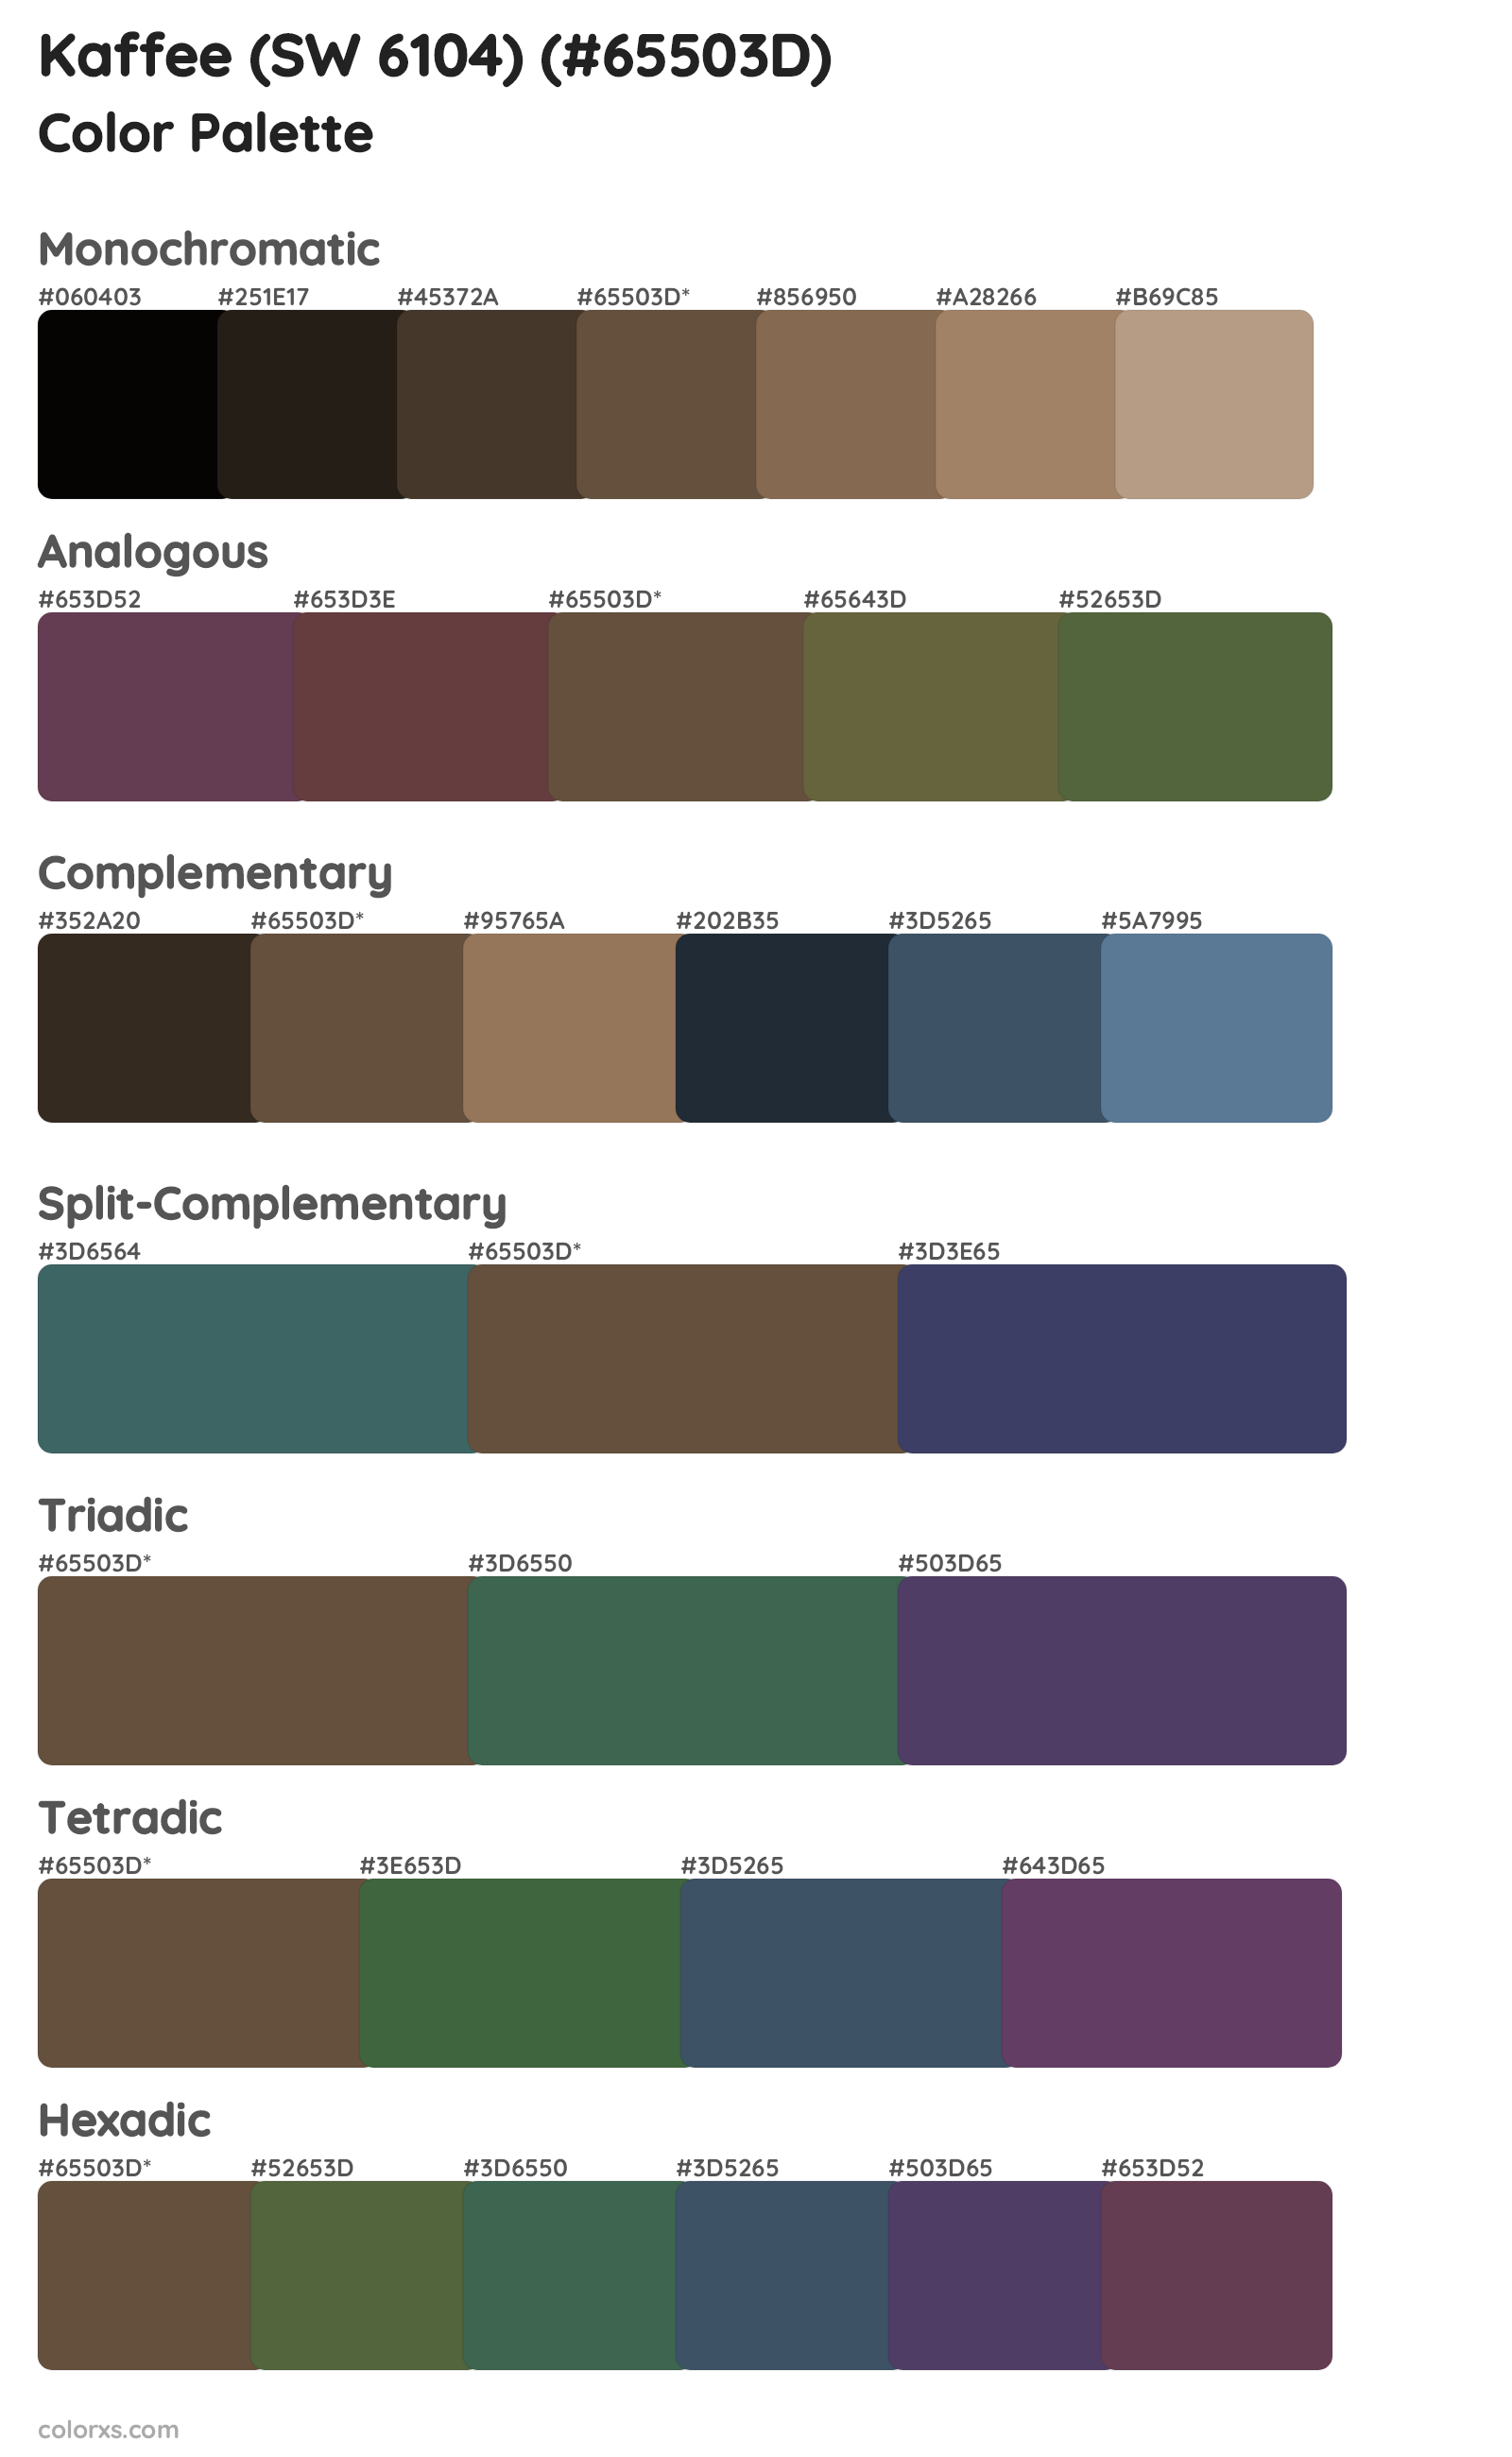 Kaffee (SW 6104) Color Scheme Palettes